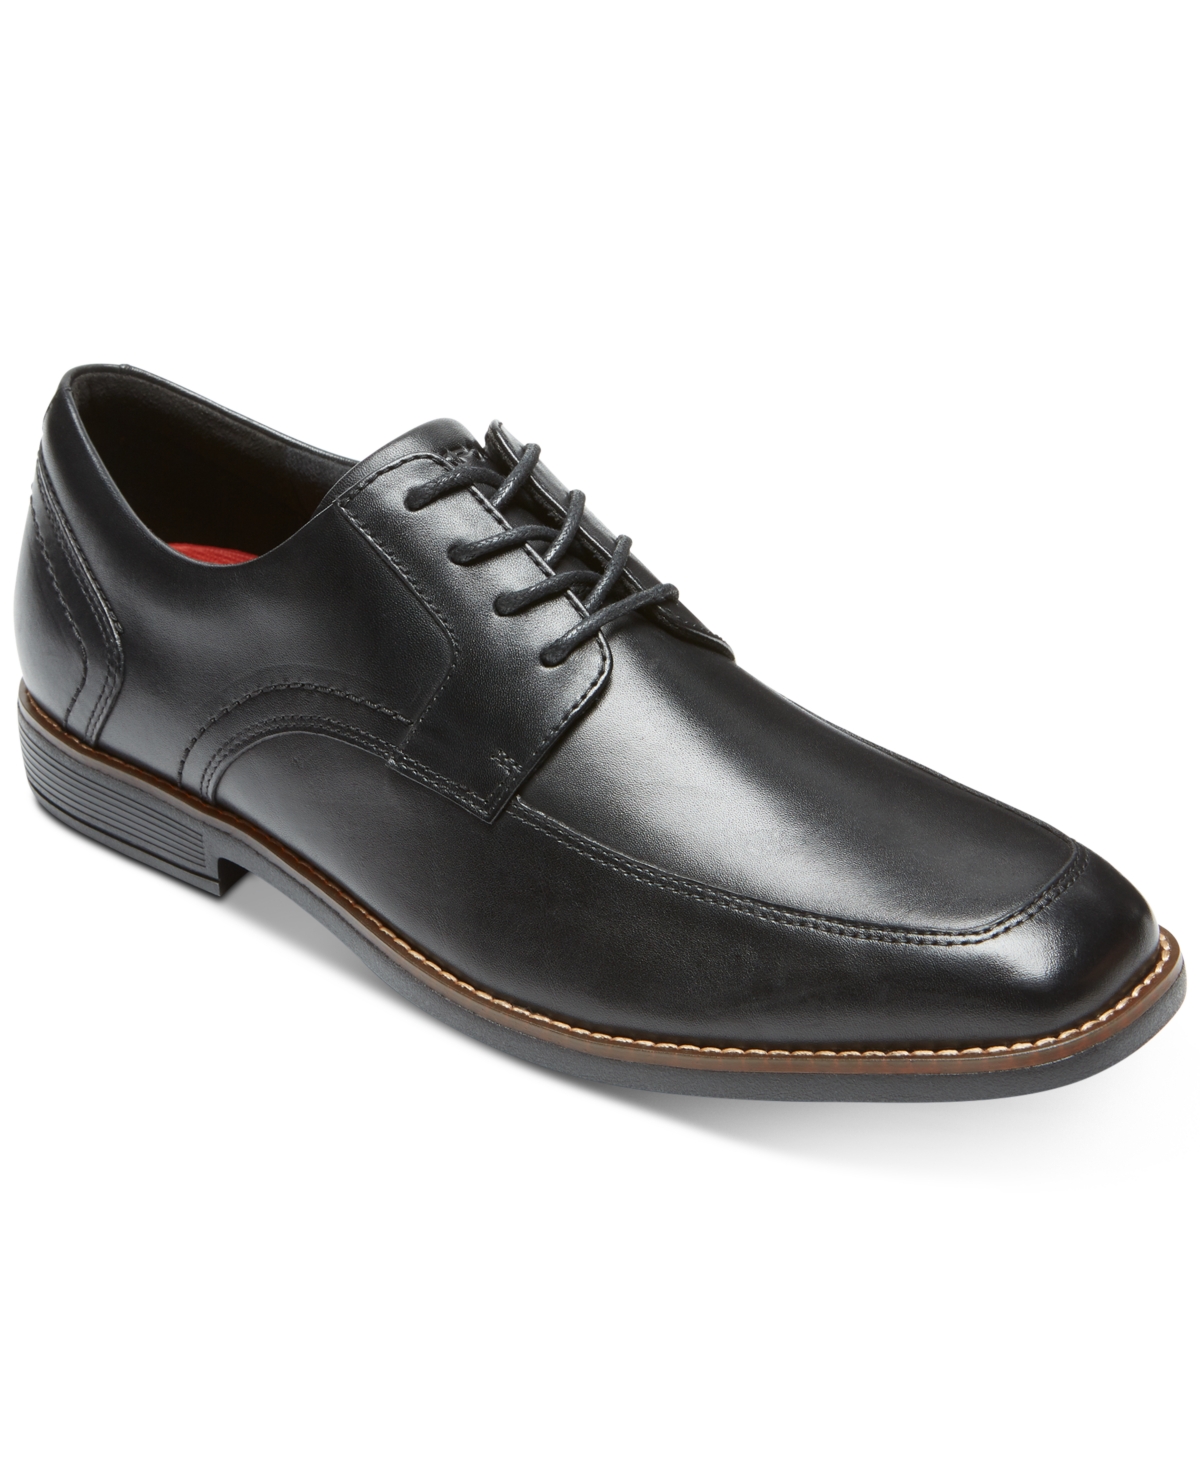 Men's Slayter Apron Toe Shoes - Black